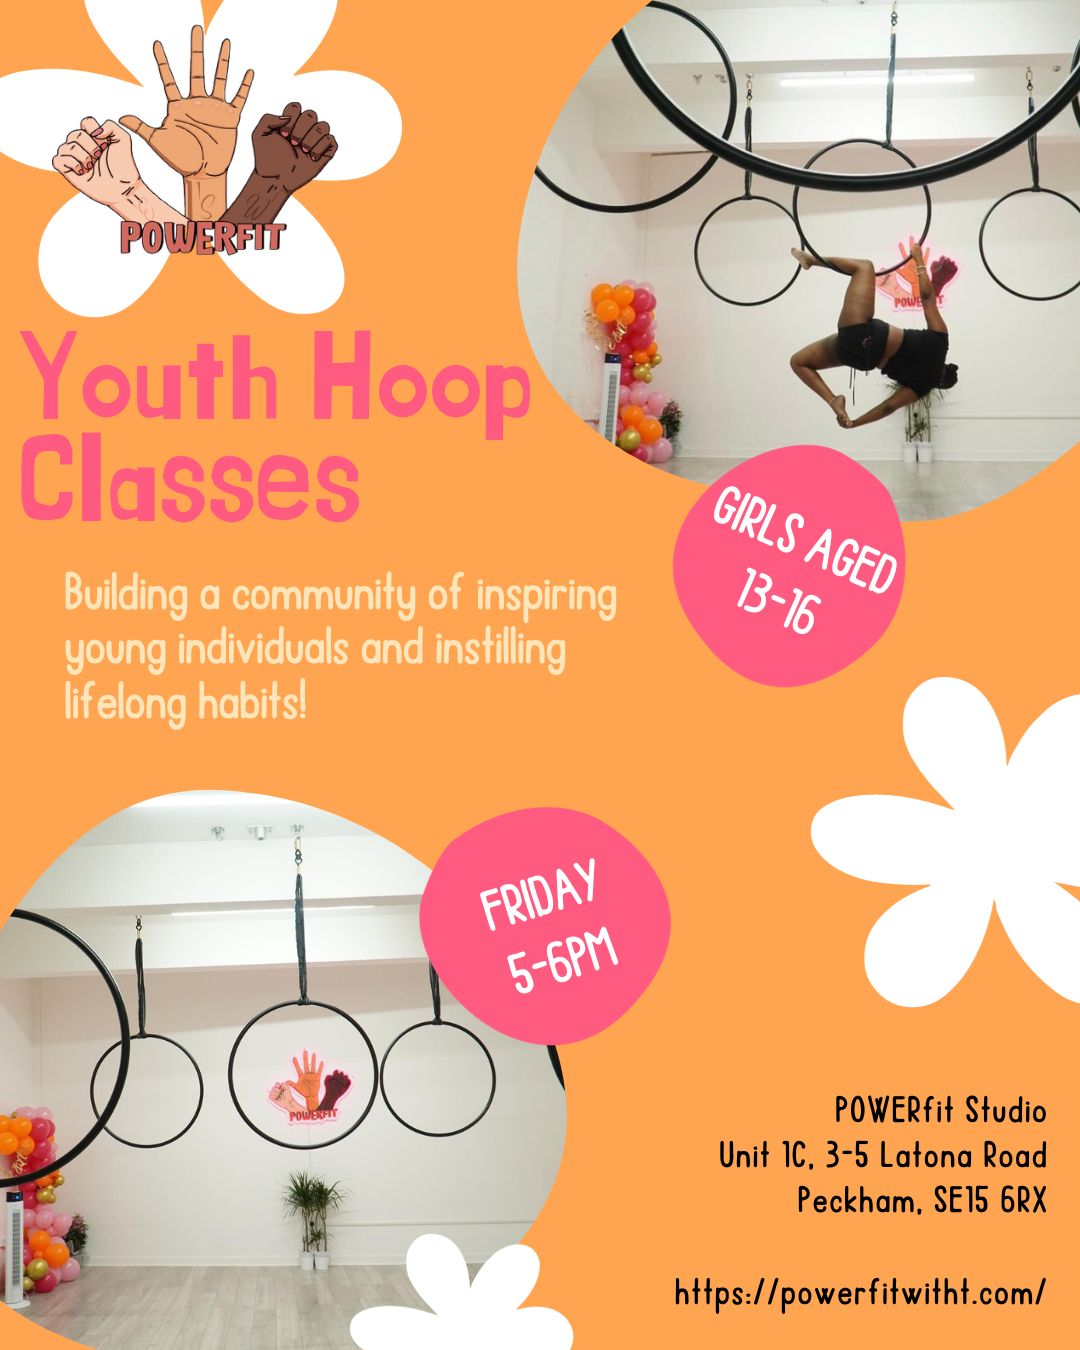 POWERfit Youth hoop classes